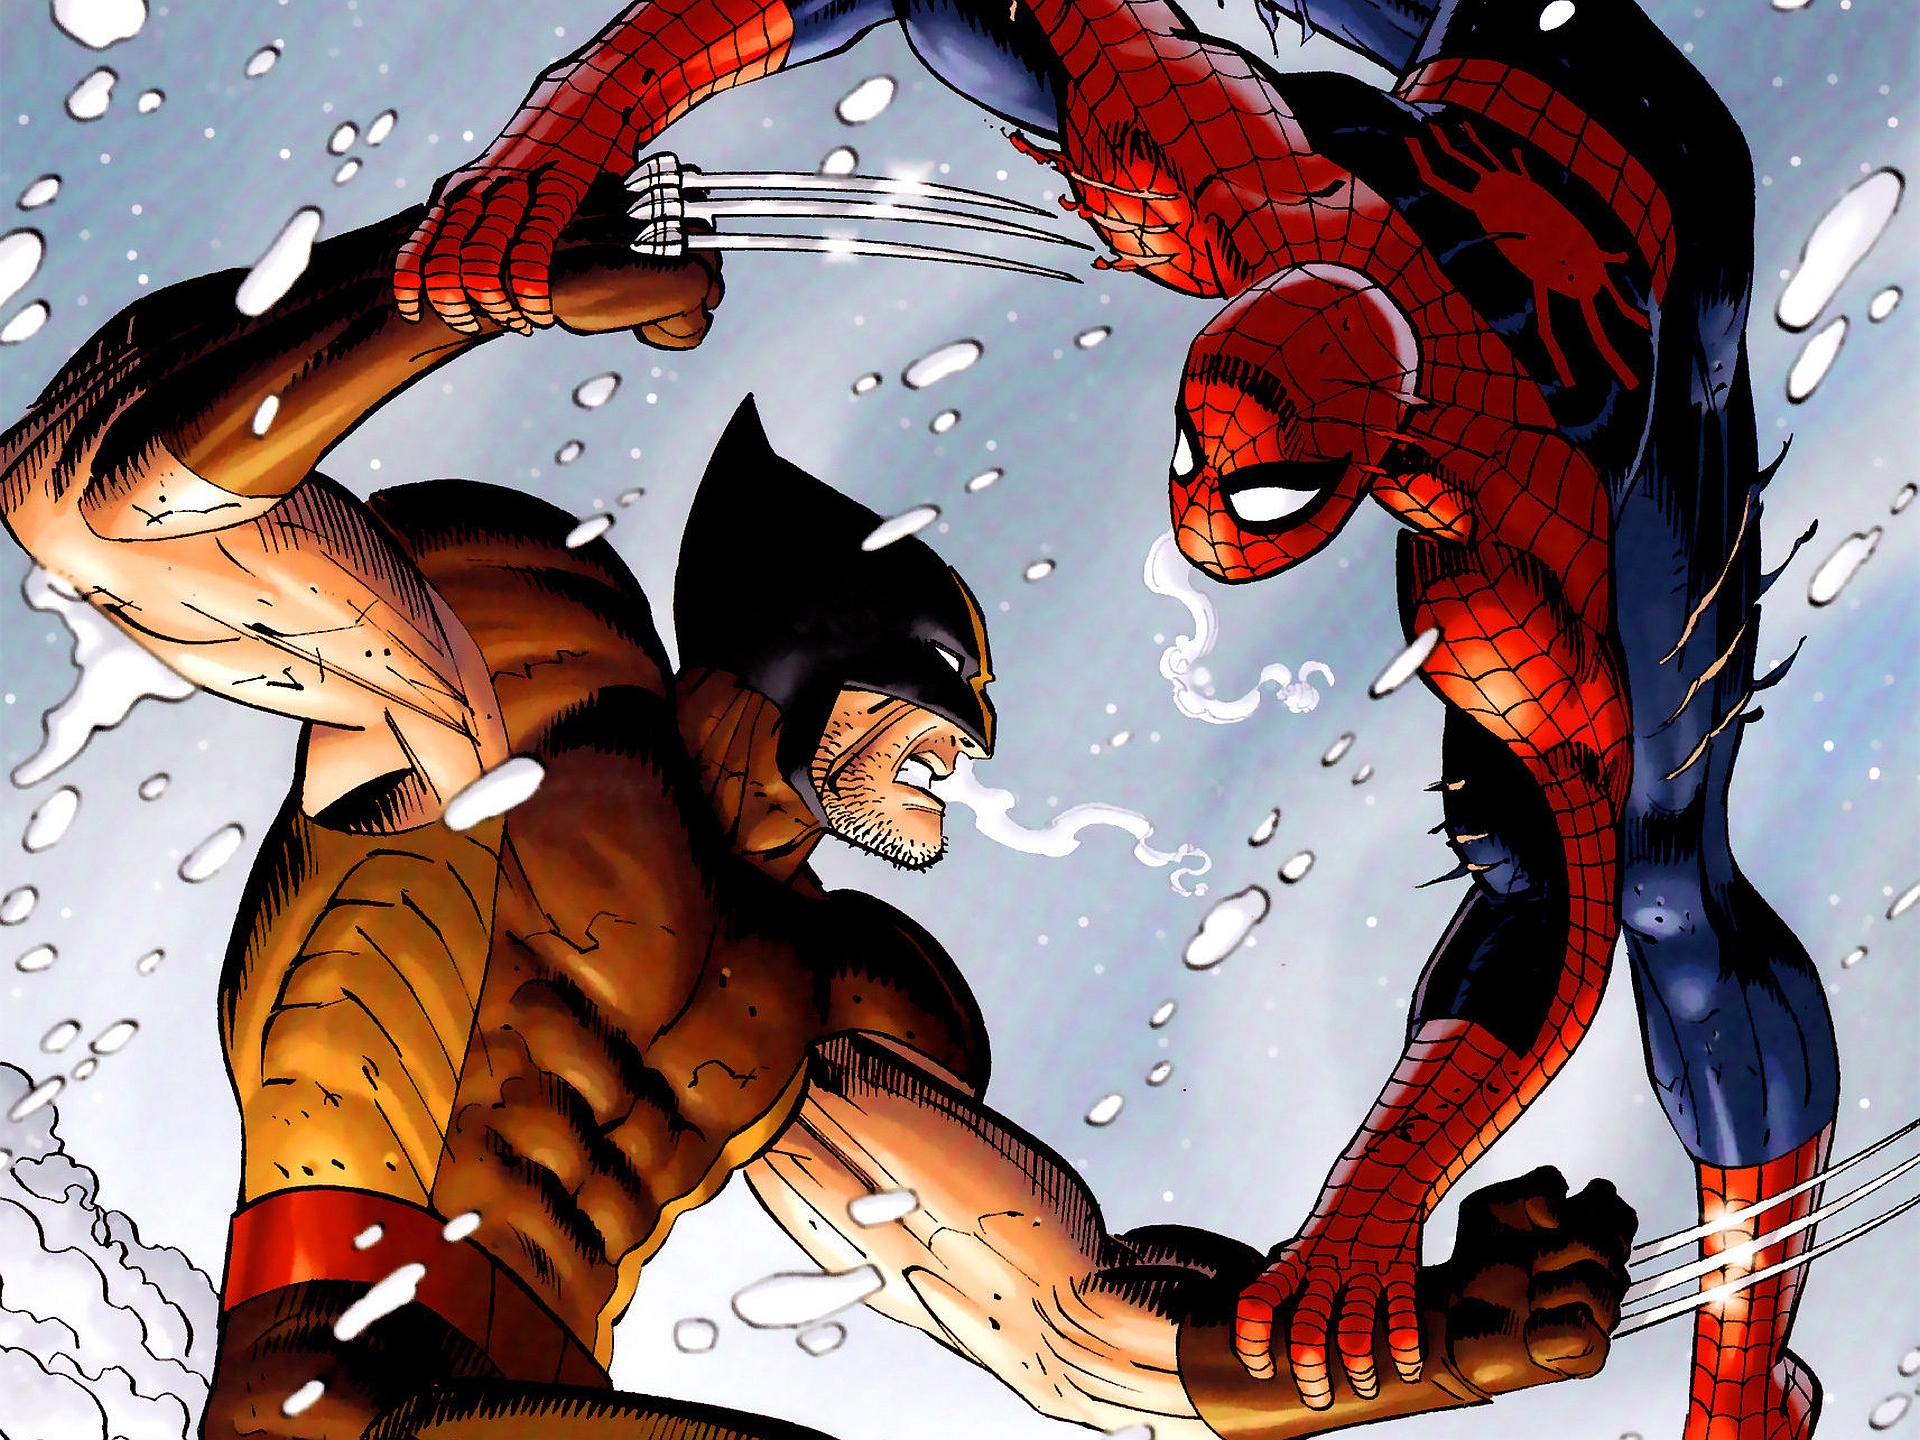 Habrá X-Men en Spider-Man 2 (Actualizado) • Cinergetica